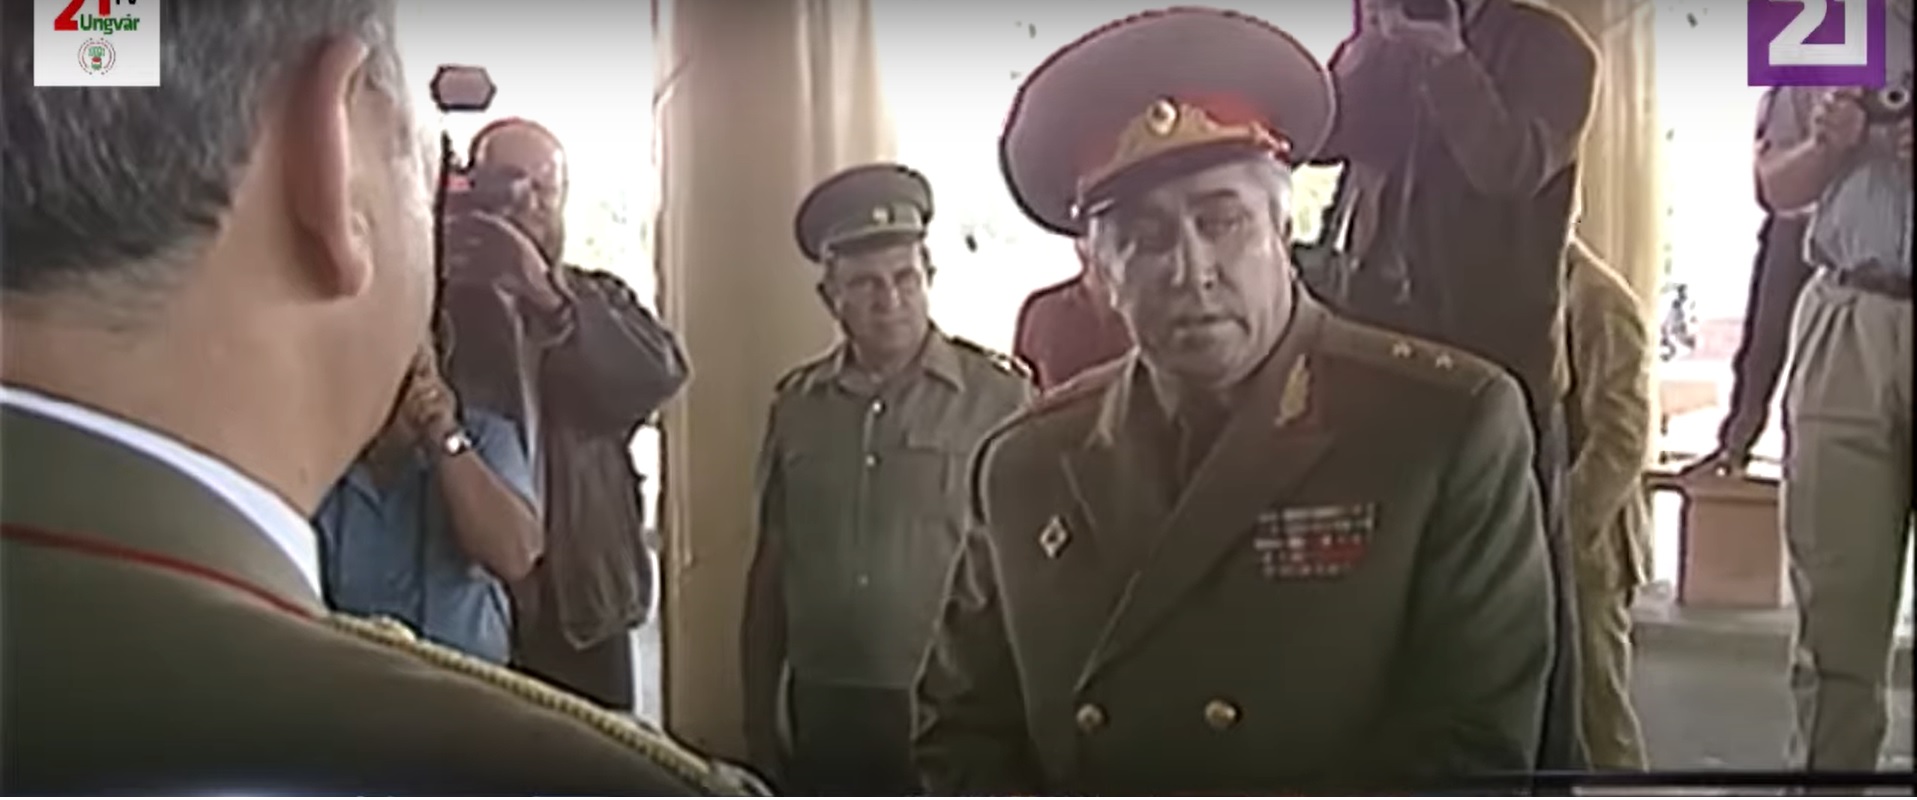 Meghalt Viktor Silov, aki utolsó szovjet katonaként vonult ki Magyarországról